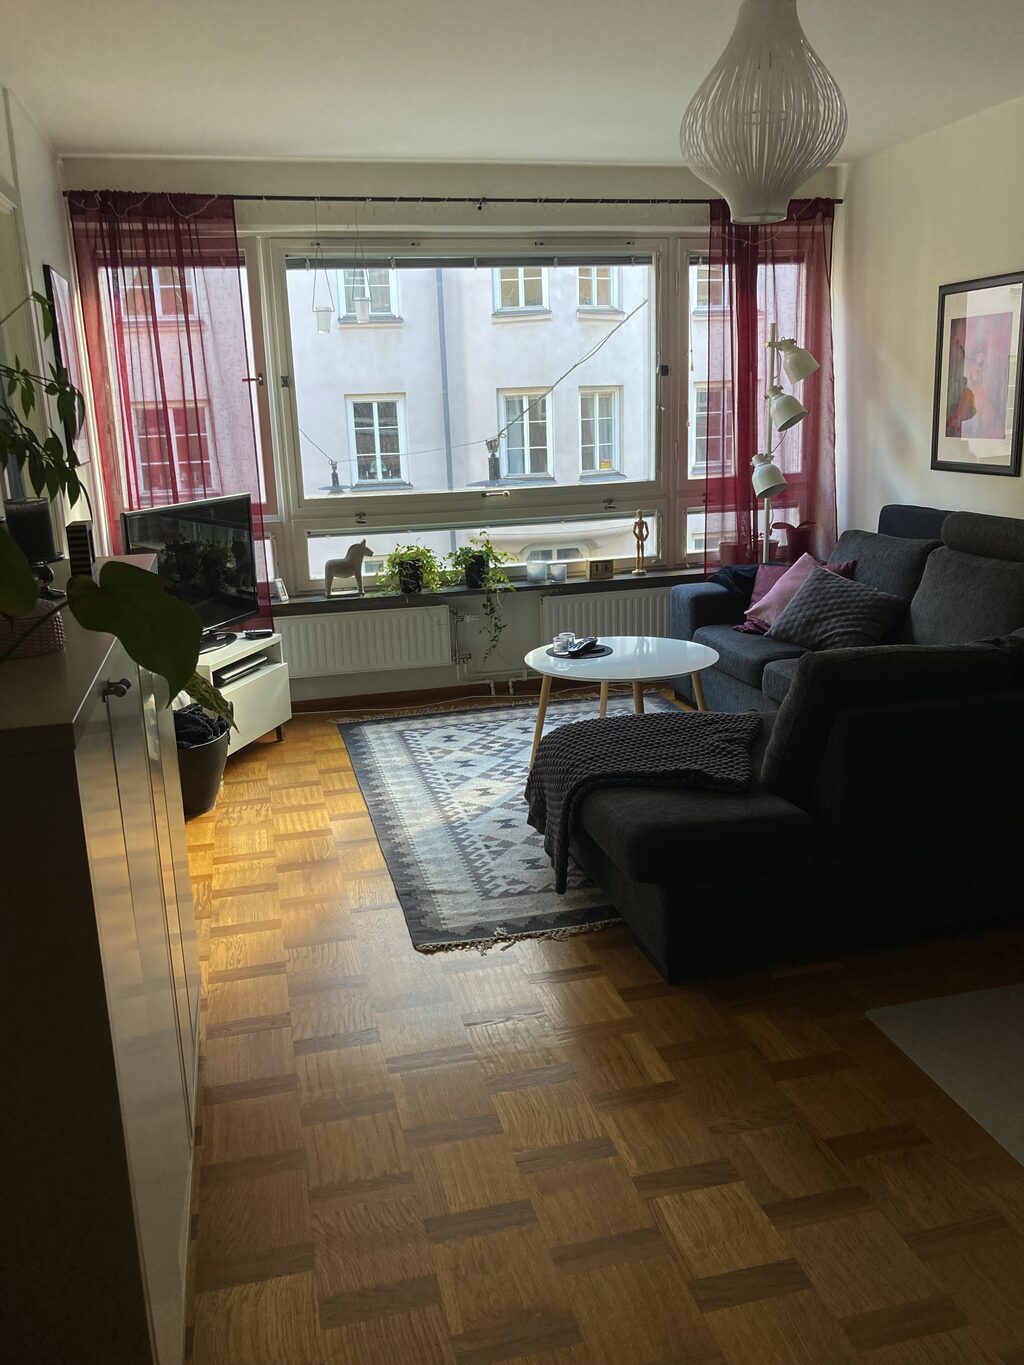 Lägenhetsbyte - Tomtebogatan 6, 113 39 Stockholm